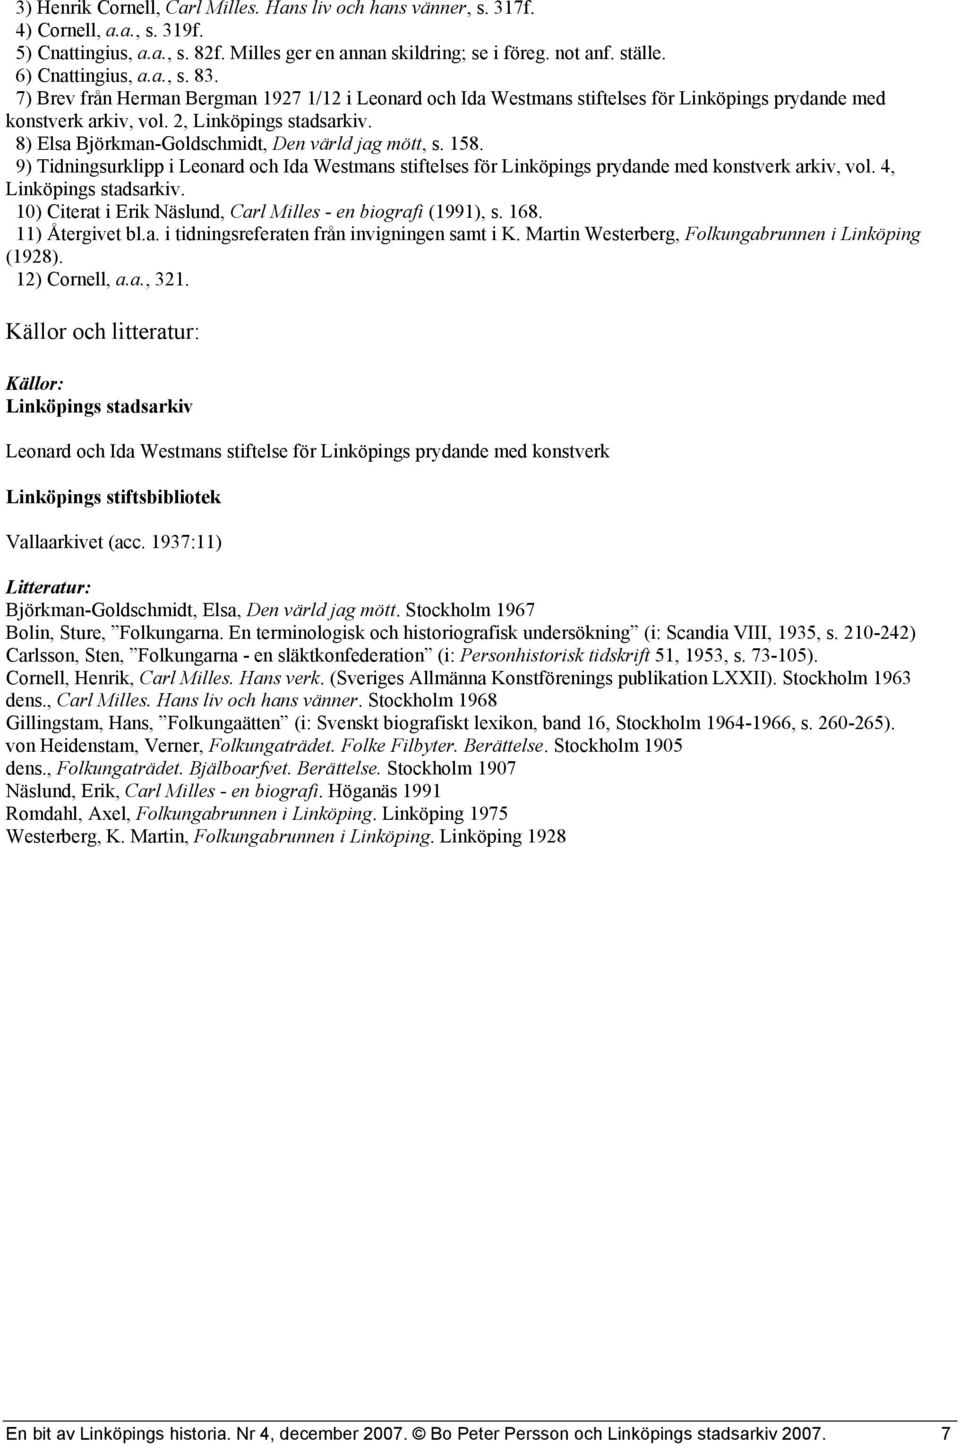 8) Elsa Björkman-Goldschmidt, Den värld jag mött, s. 158. 9) Tidningsurklipp i Leonard och Ida Westmans stiftelses för Linköpings prydande med konstverk arkiv, vol. 4, Linköpings stadsarkiv.